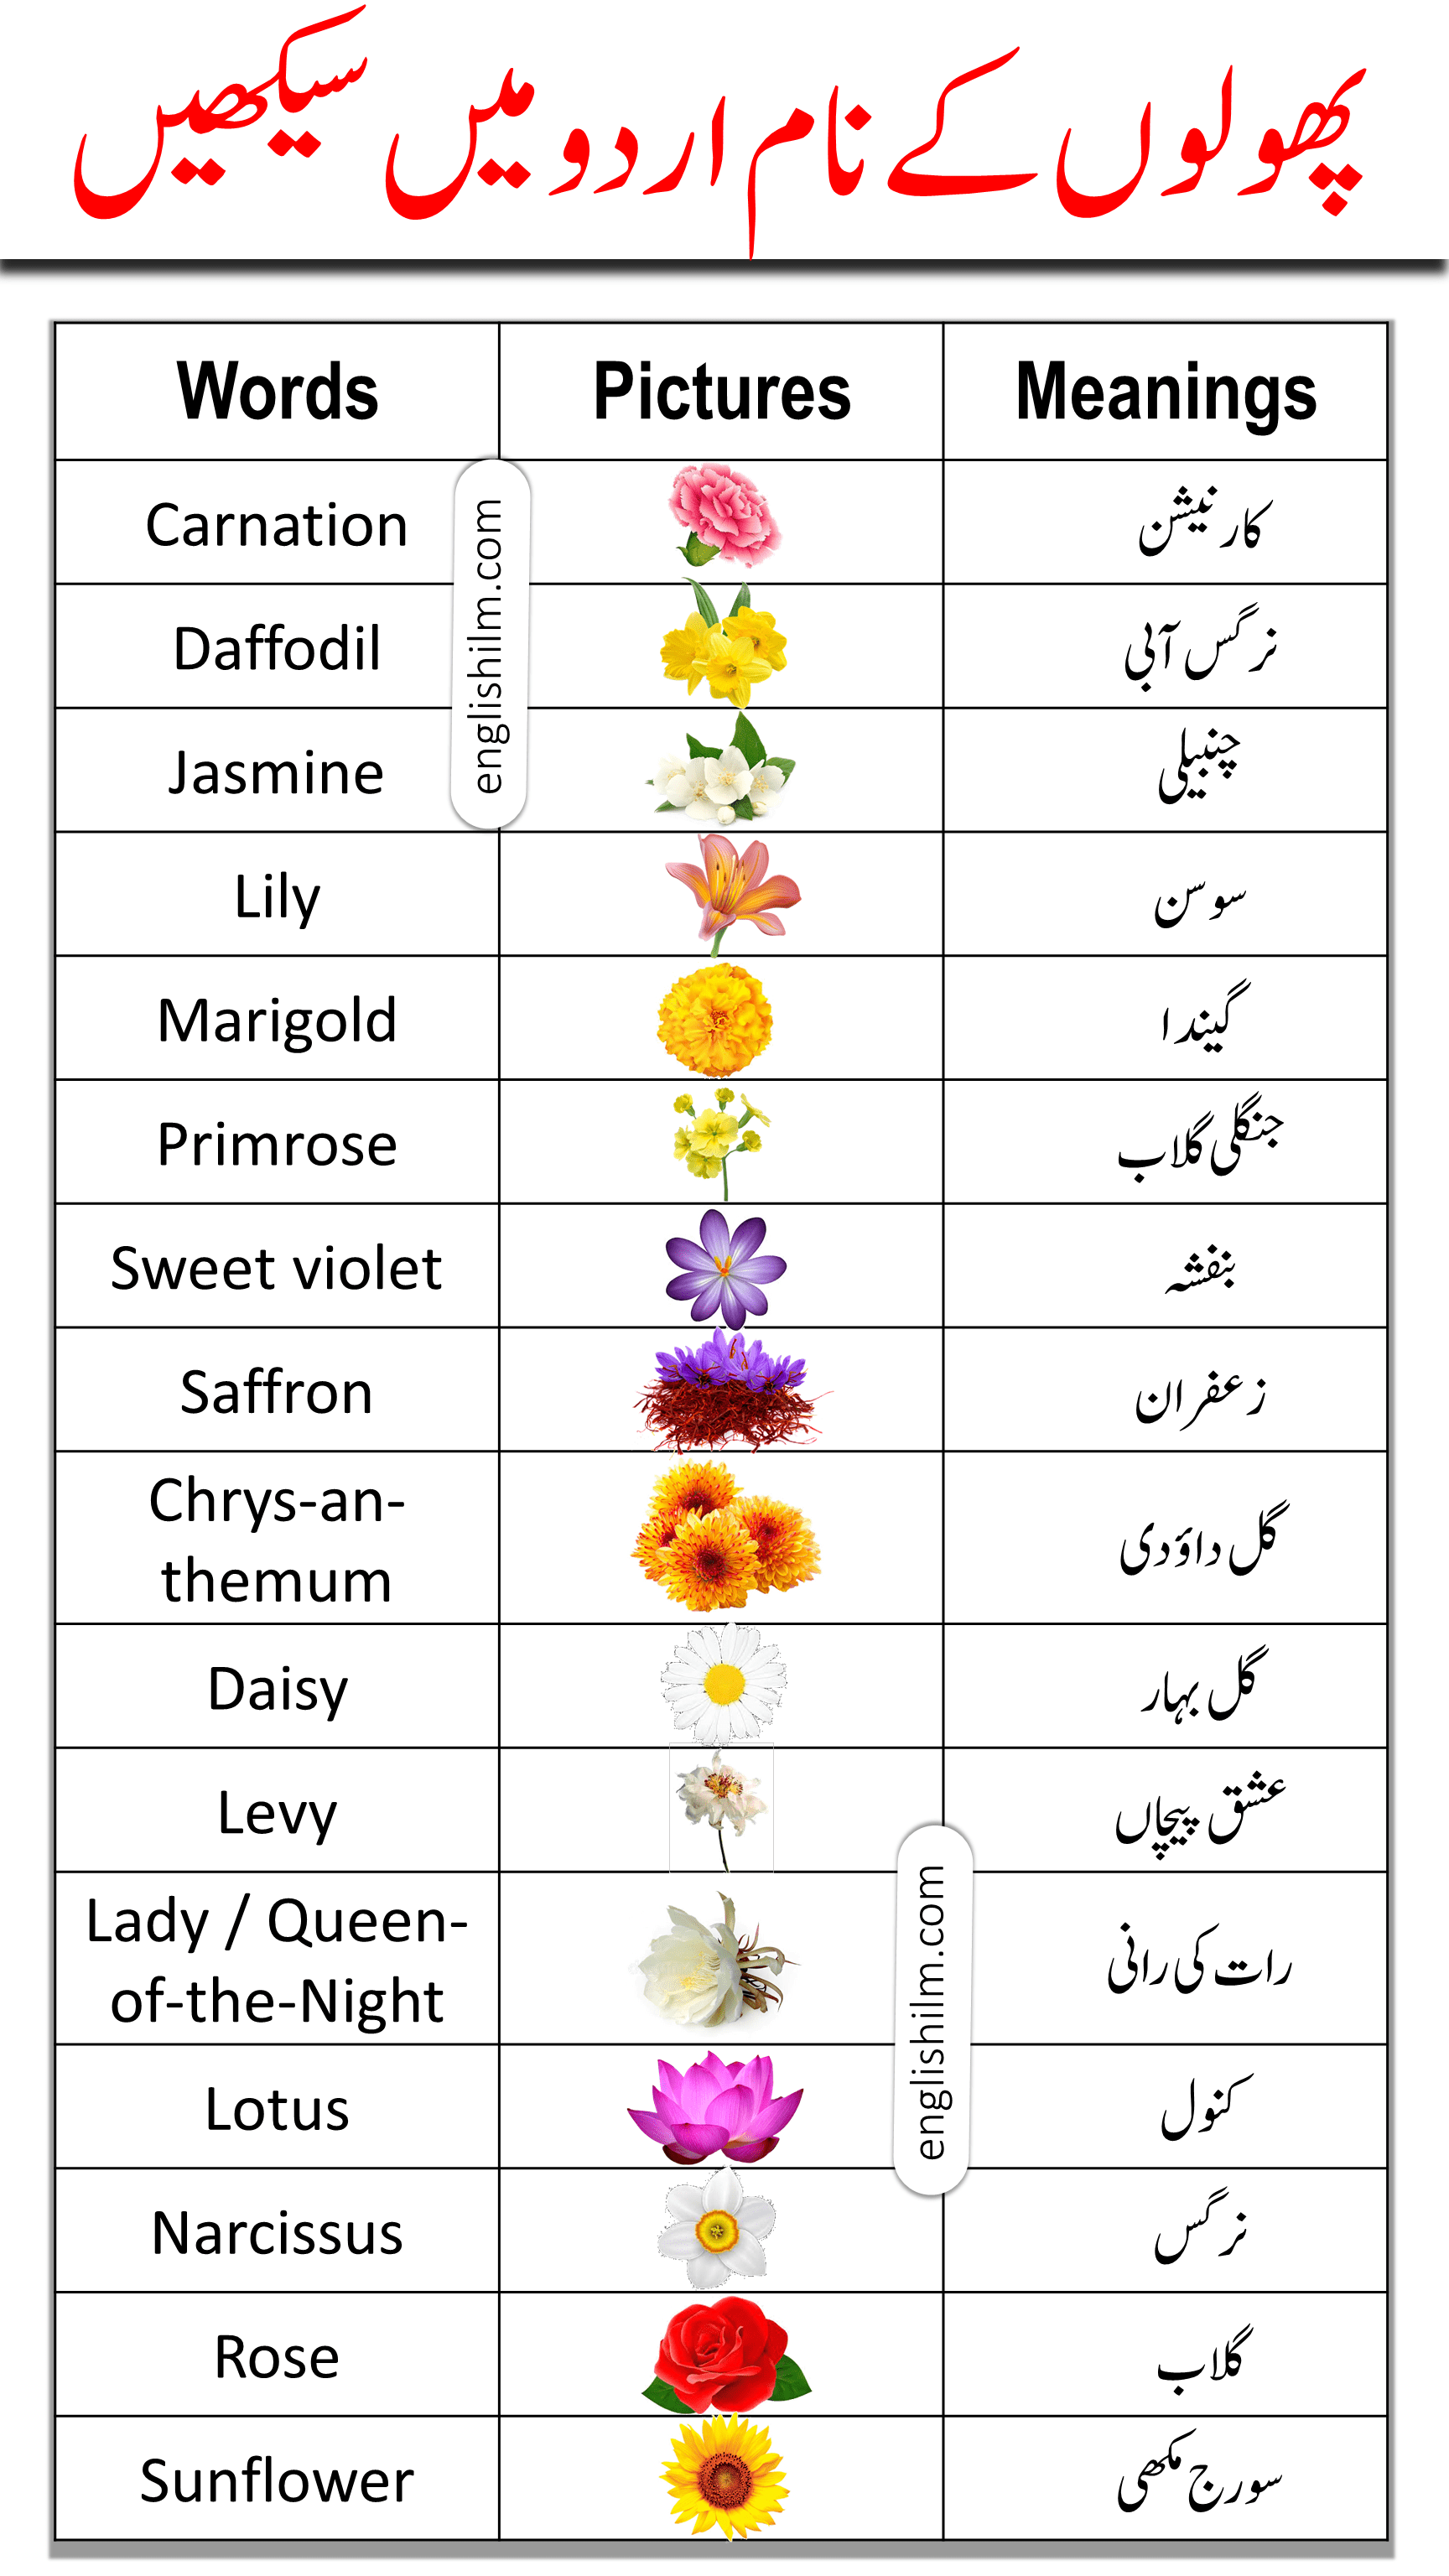 daisy flower meaning in urdu